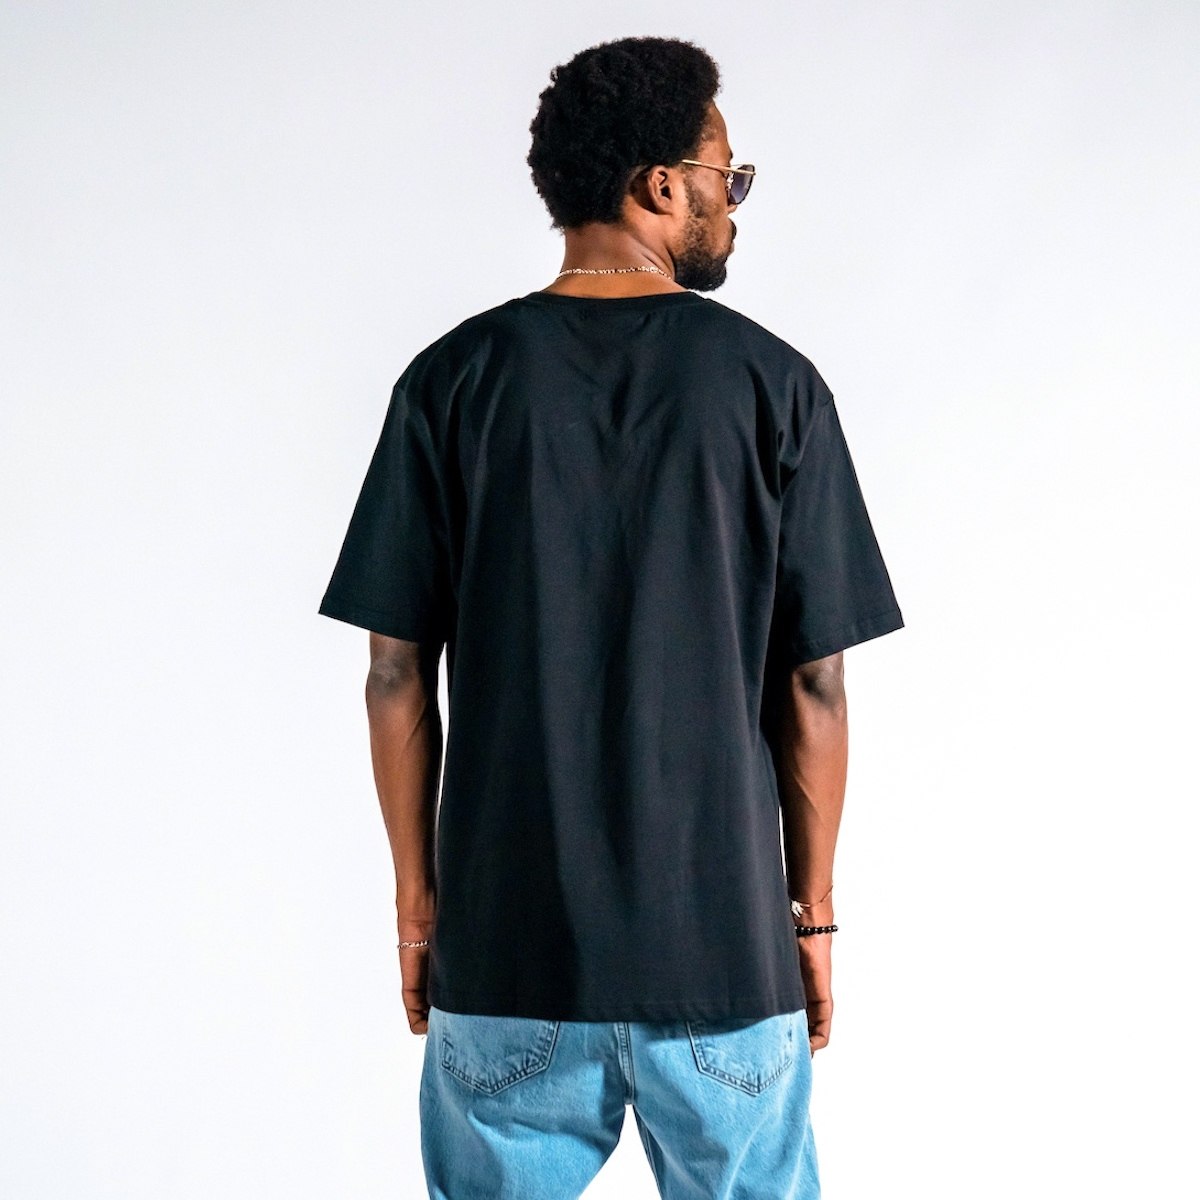 Мужская футболка с принтом, размер XL, черного цвета | Martin Valen